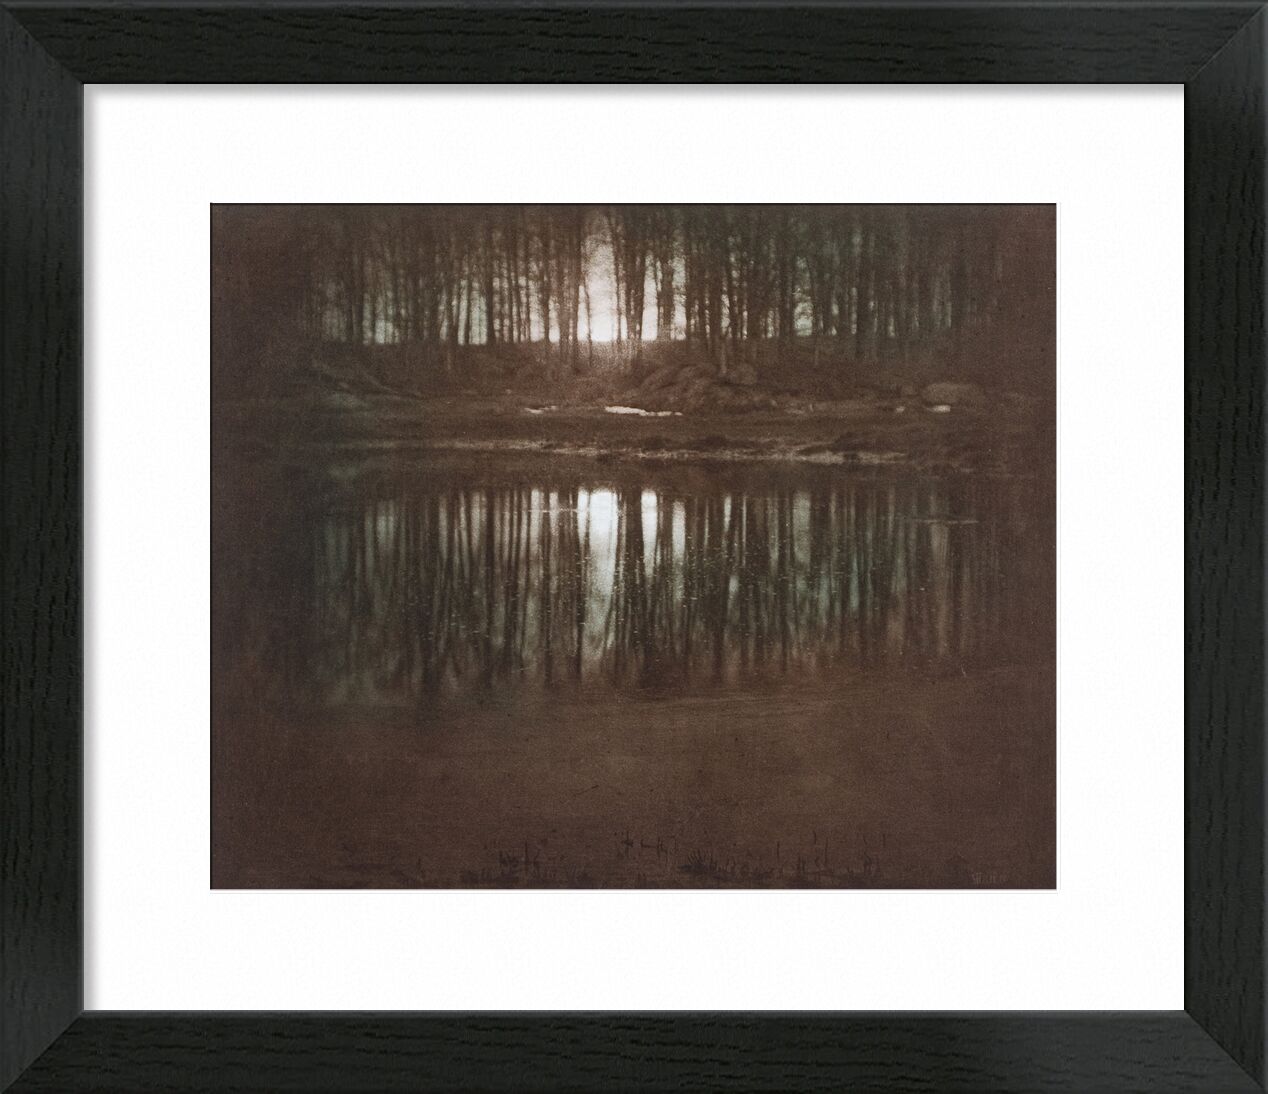 The Pond—Moonlight -Edward Steichen 1904 desde Bellas artes, Prodi Art, estanque, ligero, sol, puesta de sol, Edward Steichen, blanco y negro, contra el dia